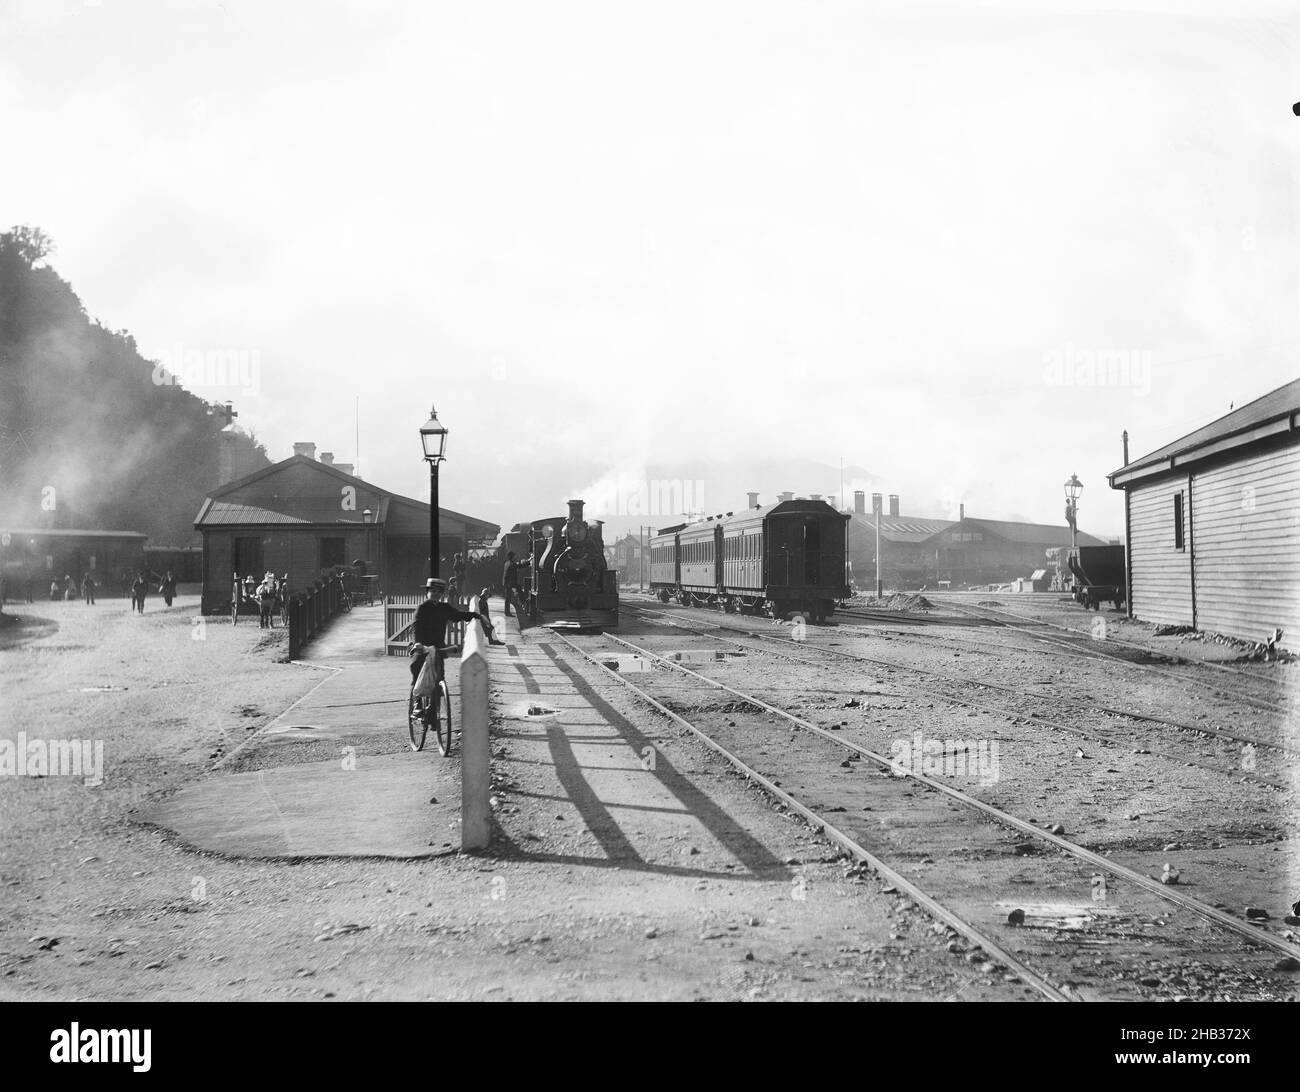 [Gare de Greymouth], studio Muir & Moodie, studio de photographie, Nouvelle-Zélande, gare de Greymouth prise de l'extrémité Hokitika de la plate-forme principale.À gauche, un train est récemment arrivé à la plate-forme Riverside et les passagers débarqués traversent l'intersection de la rue Mackay et du quai de Mawhera.Sur la droite, en arrière-plan derrière les calèches, se trouvent les anciennes hangars de moteurs de Greymouth qui ont été démolis vers 1929.Le hangar, au premier plan droit, a également été démoli avant 1969 Banque D'Images